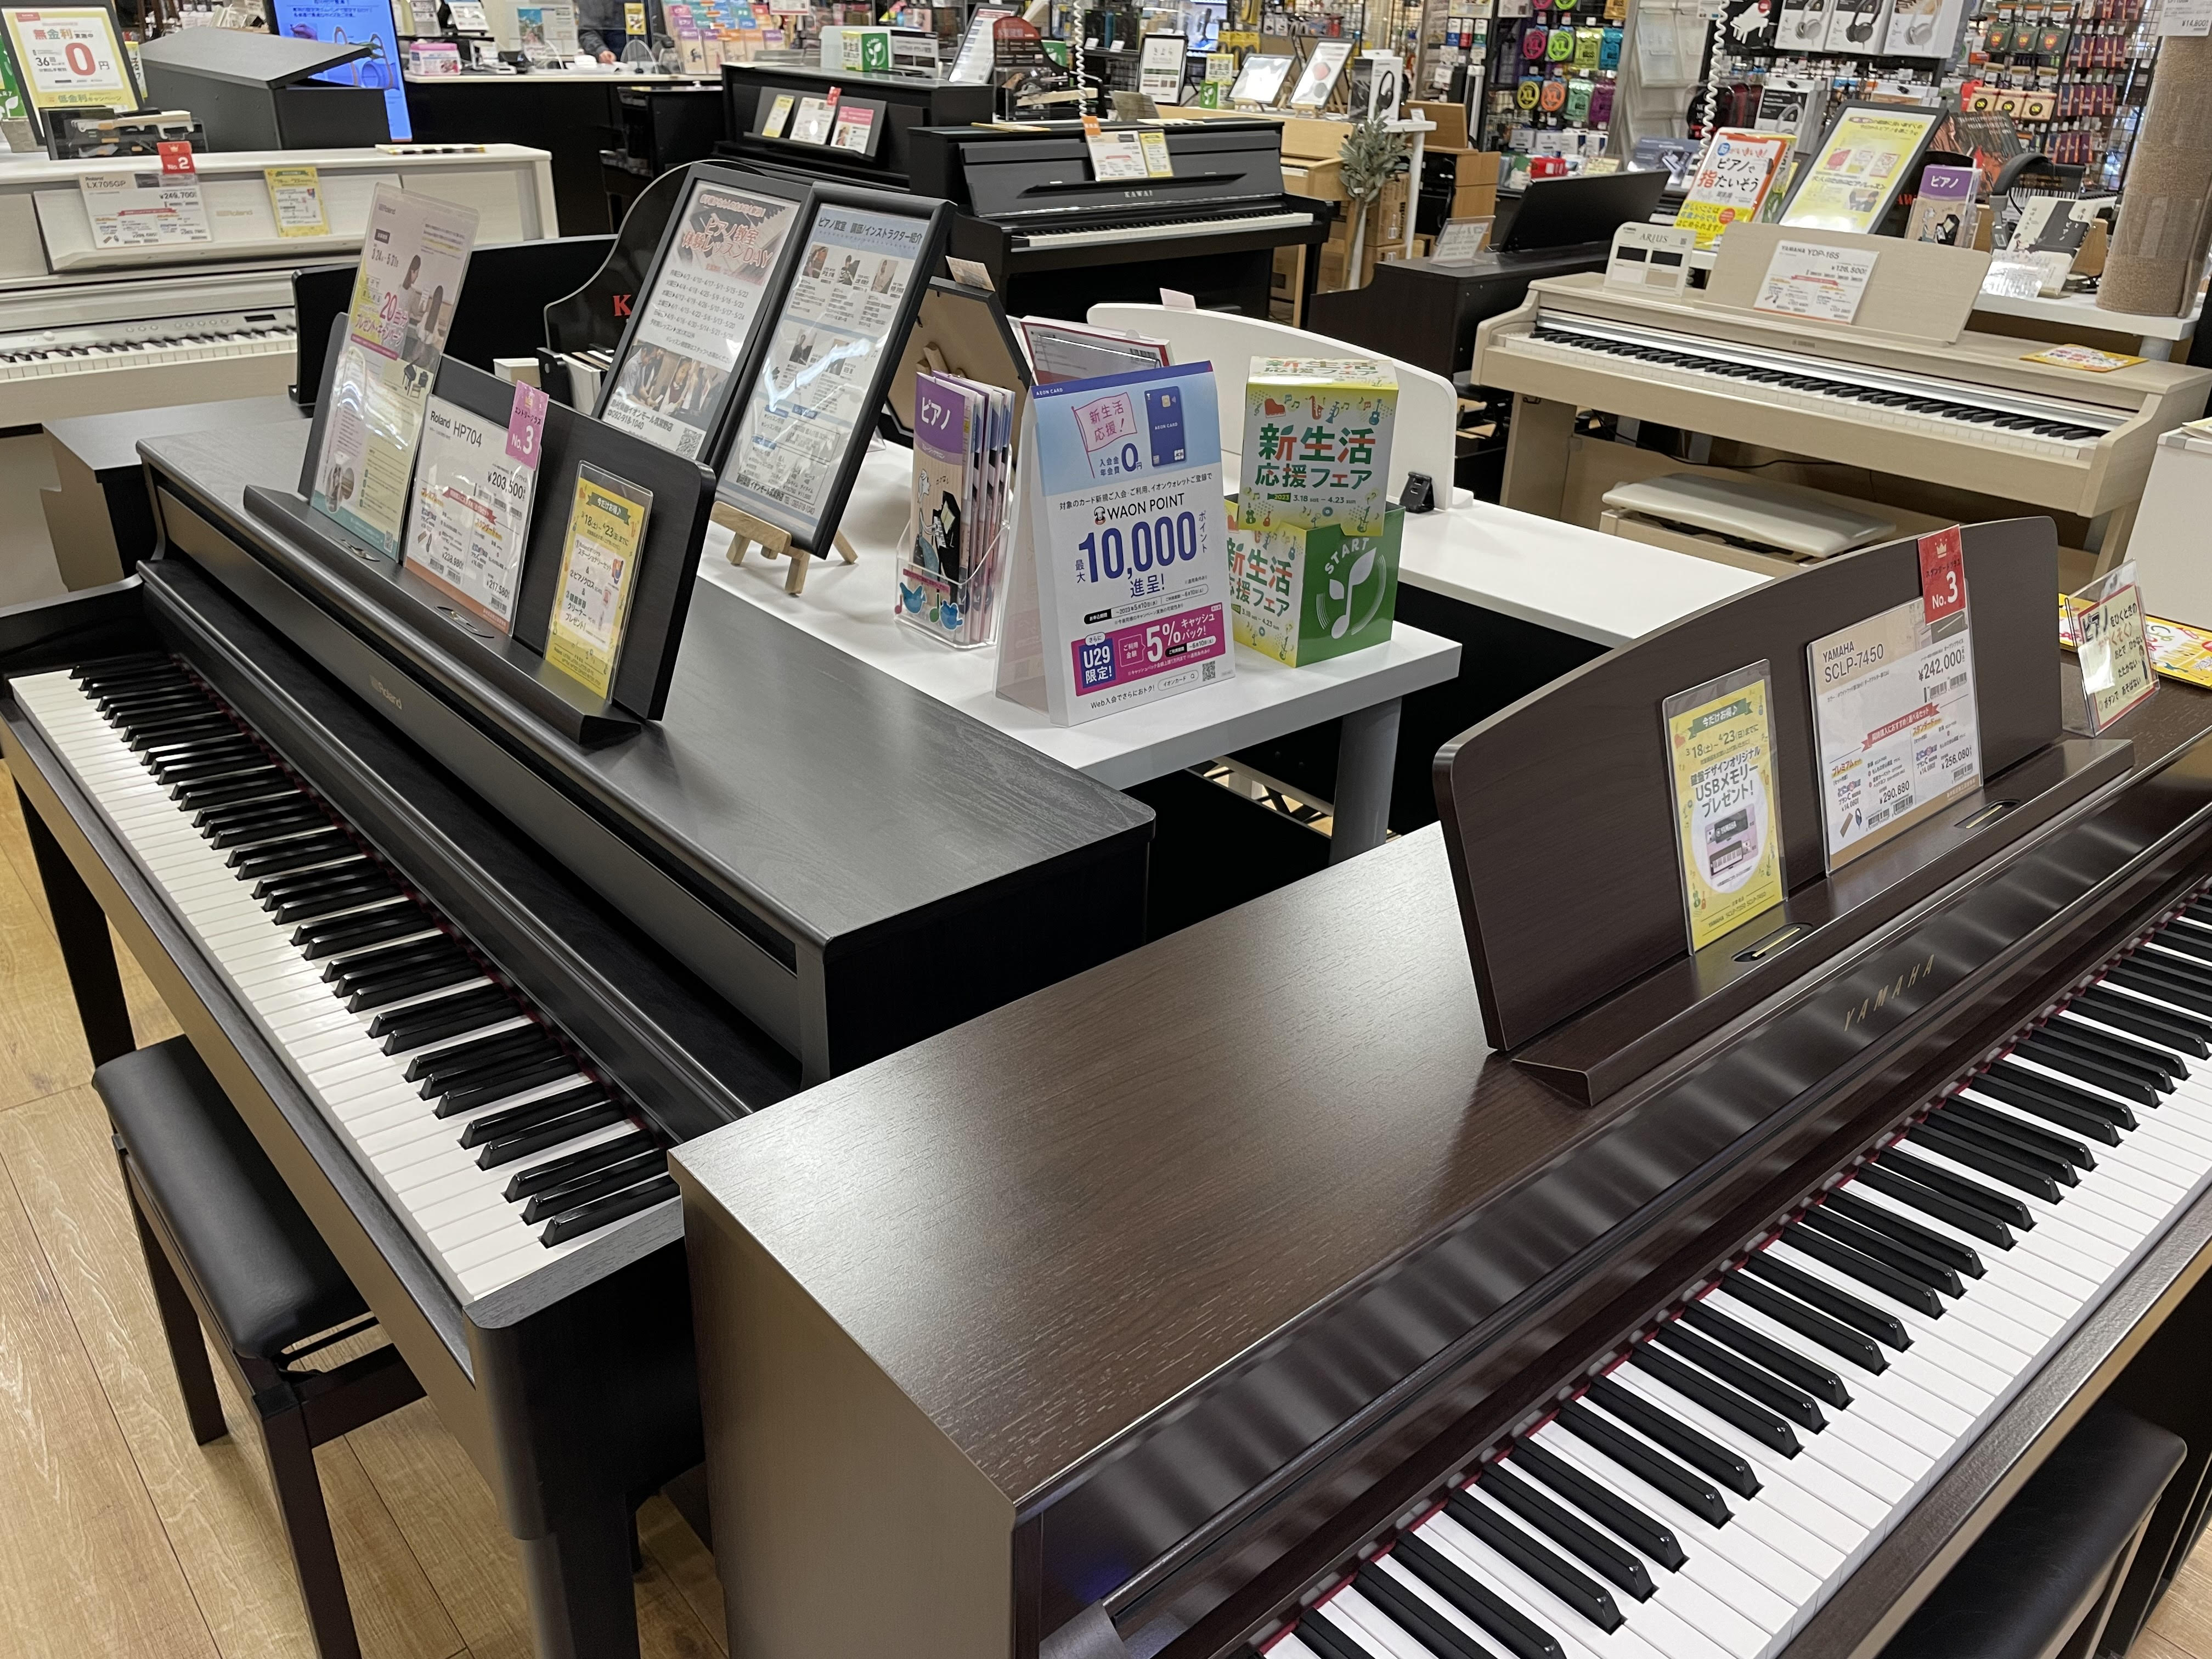 当店では、YAMAHA・KAWAI・Roland・CASIOの機種を20台ほど常時展示しております。 ピアノを習い始めたお子様のレッスンの練習用や、大人の趣味で最近弾き始めた方、様々な方にぴったりなピアノをご提案させていただきます。弾き心地・音にこだわったピアノ、デザインにこだわった素敵なピアノ、・ […]